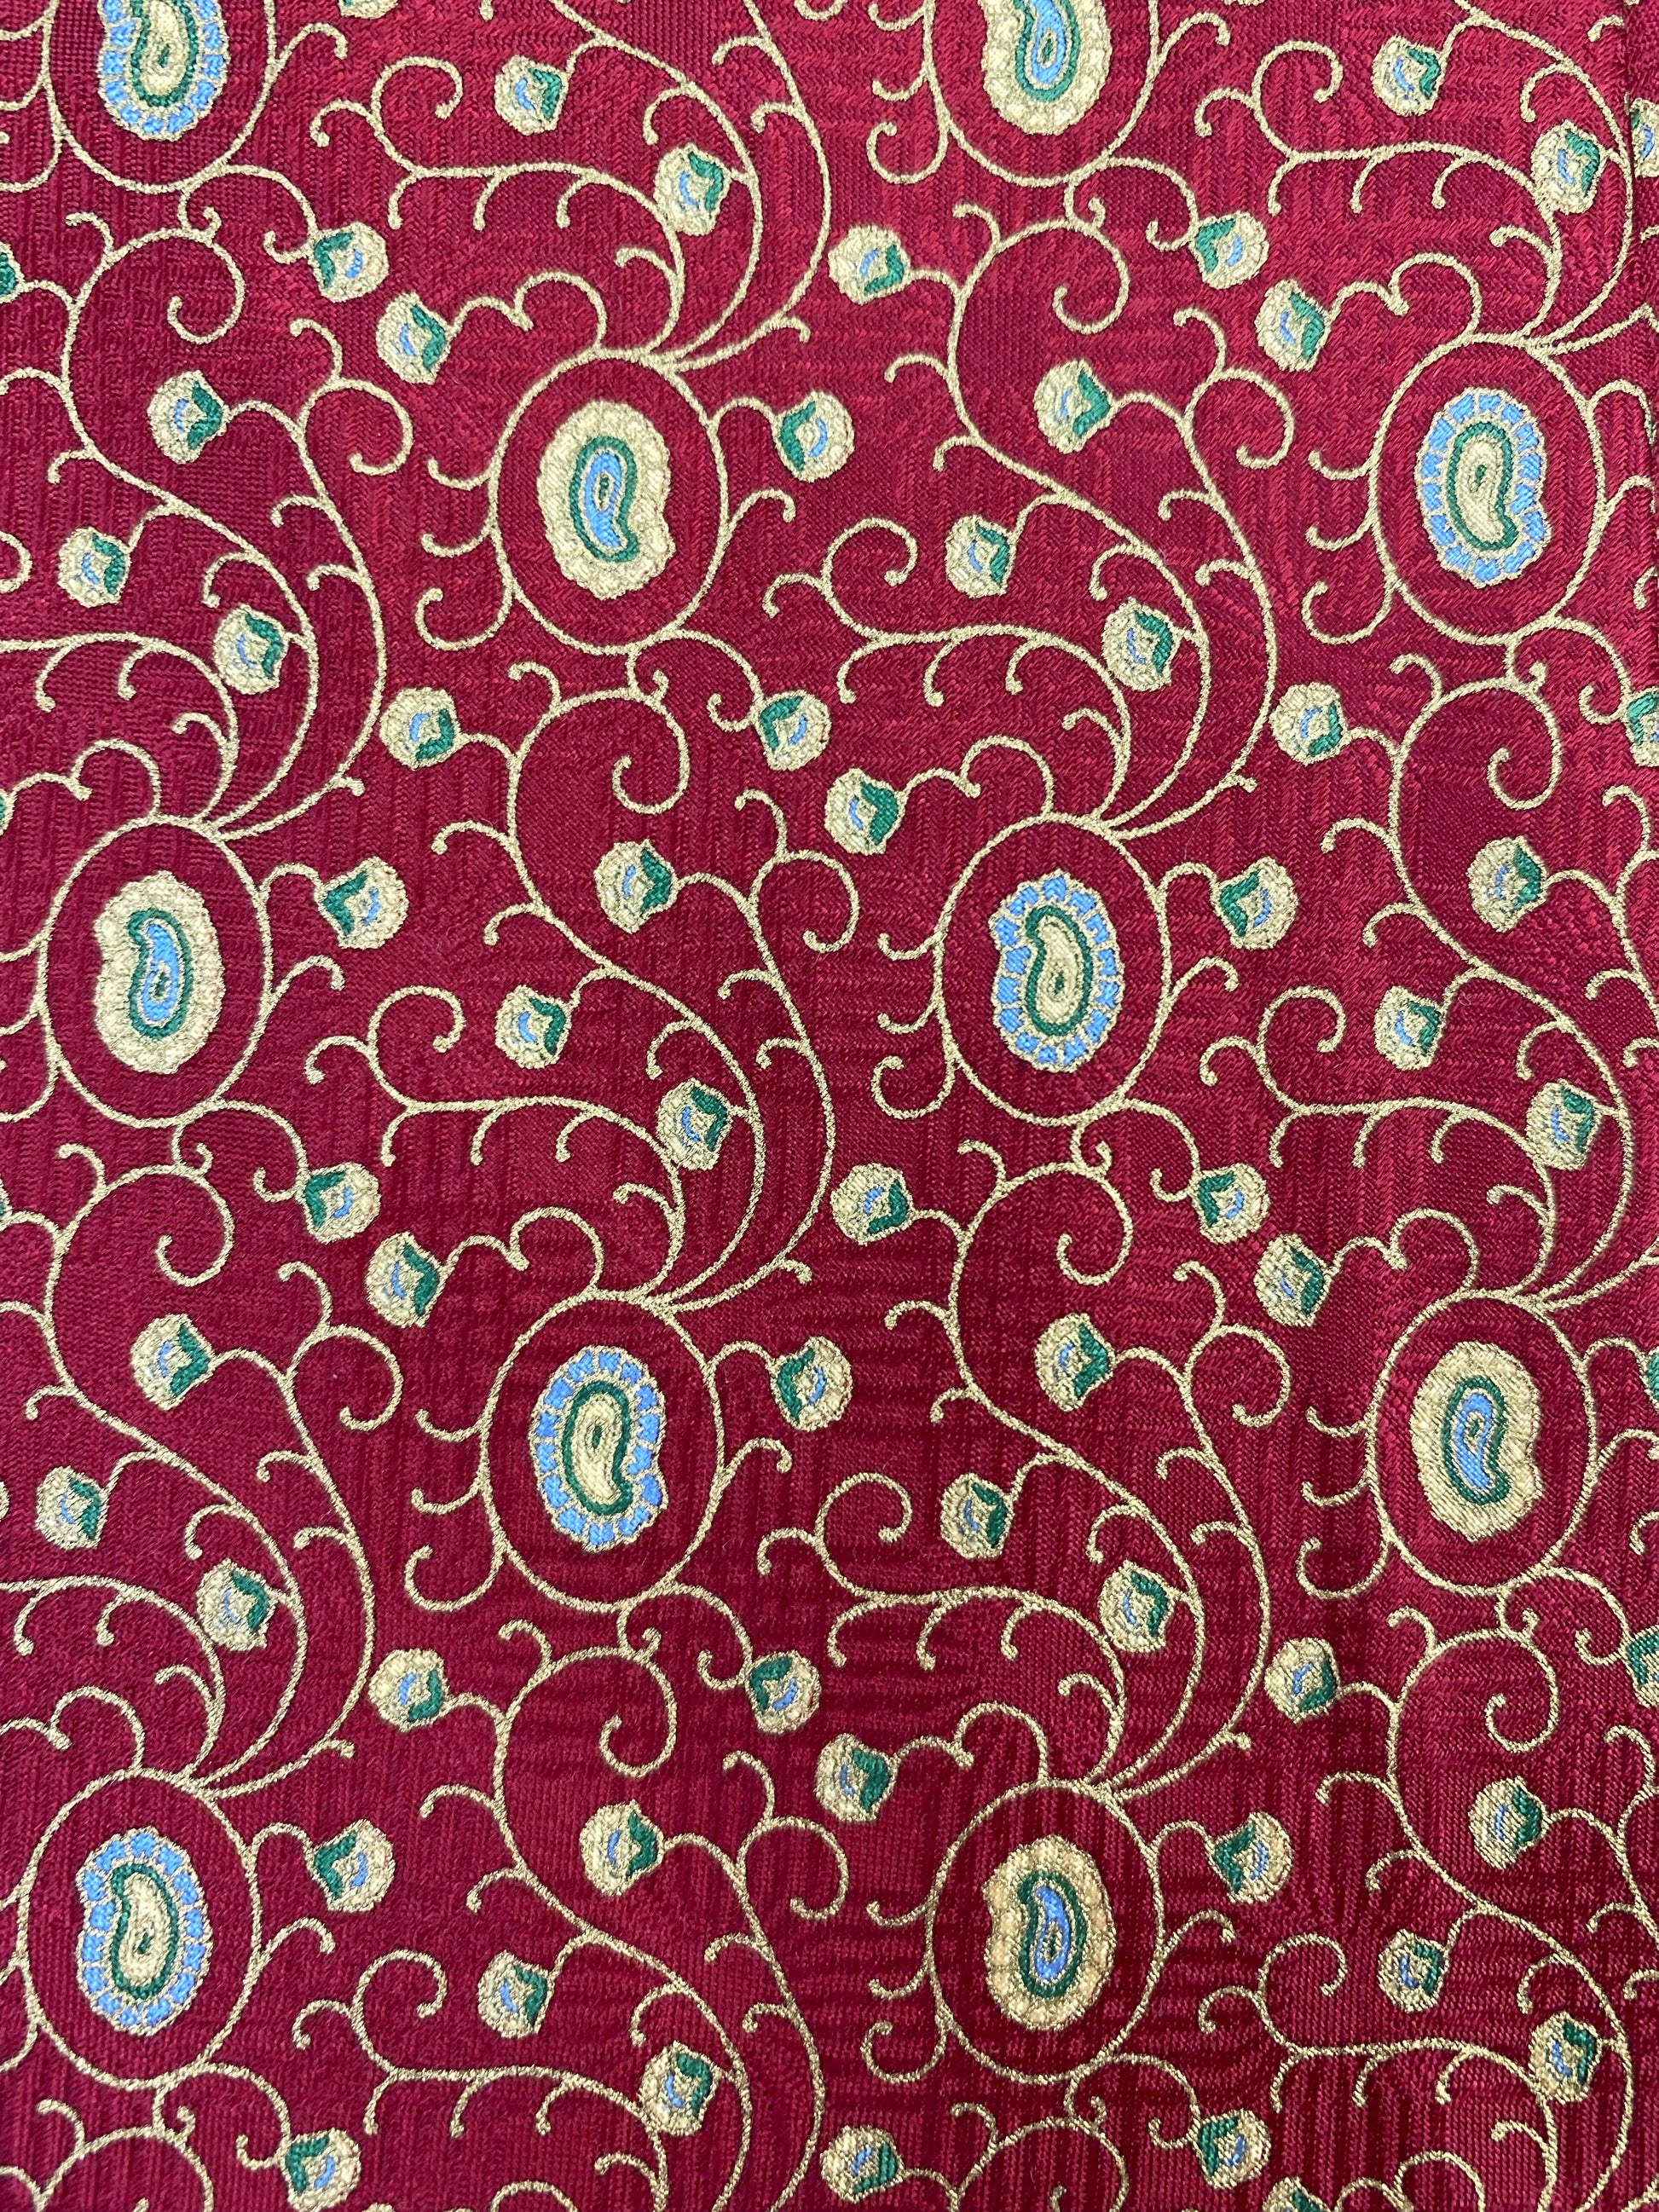 90s Deadstock Silk Necktie, Men's Vintage Red/ Gold Boteh & Vine Pattern Tie, NOS